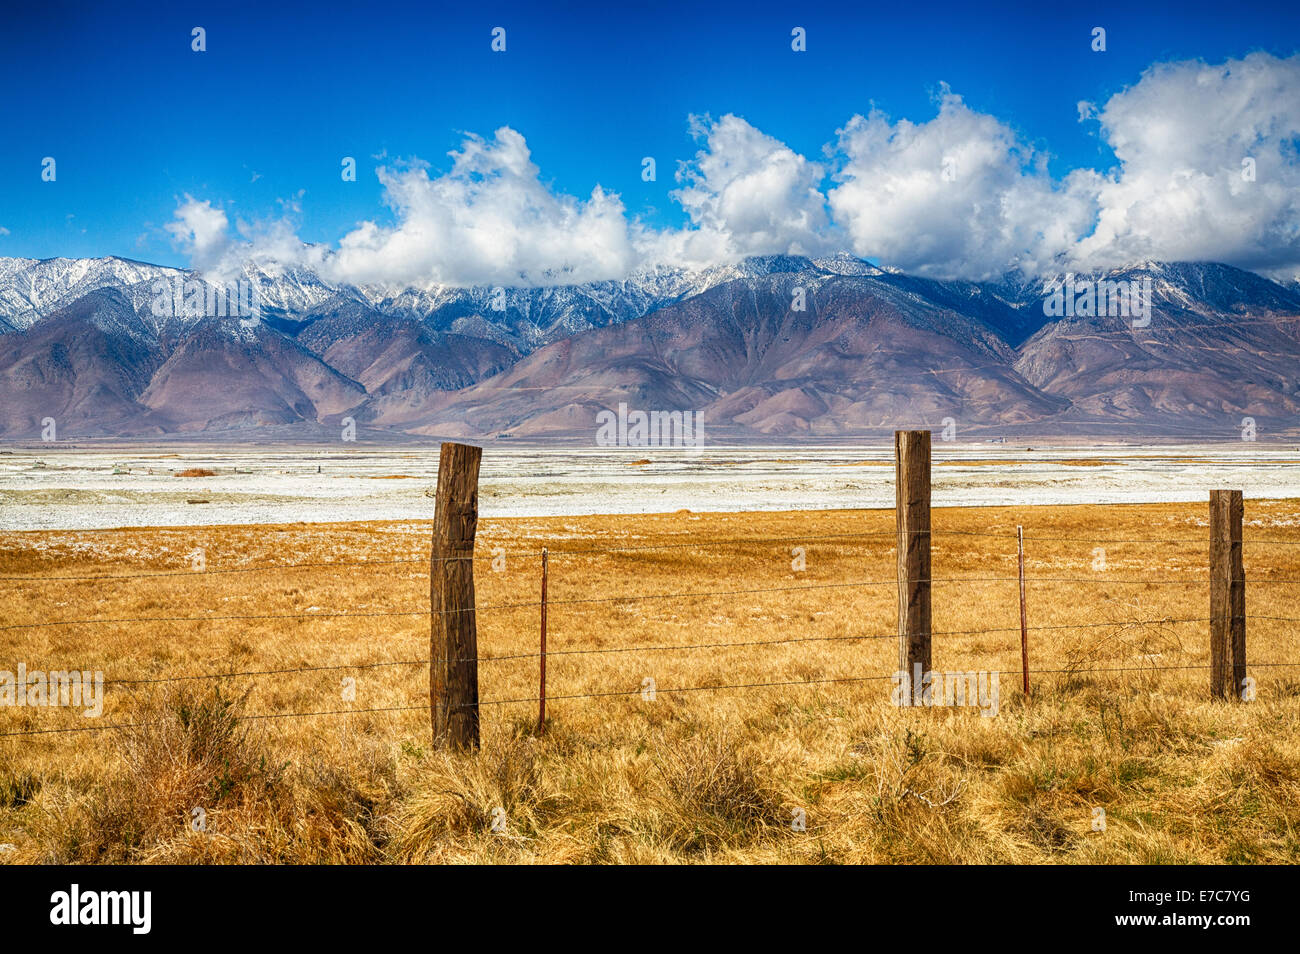 Les champs d'une ancienne ferme au pied de la partie Est de la Sierra Nevada. La Californie, USA Banque D'Images